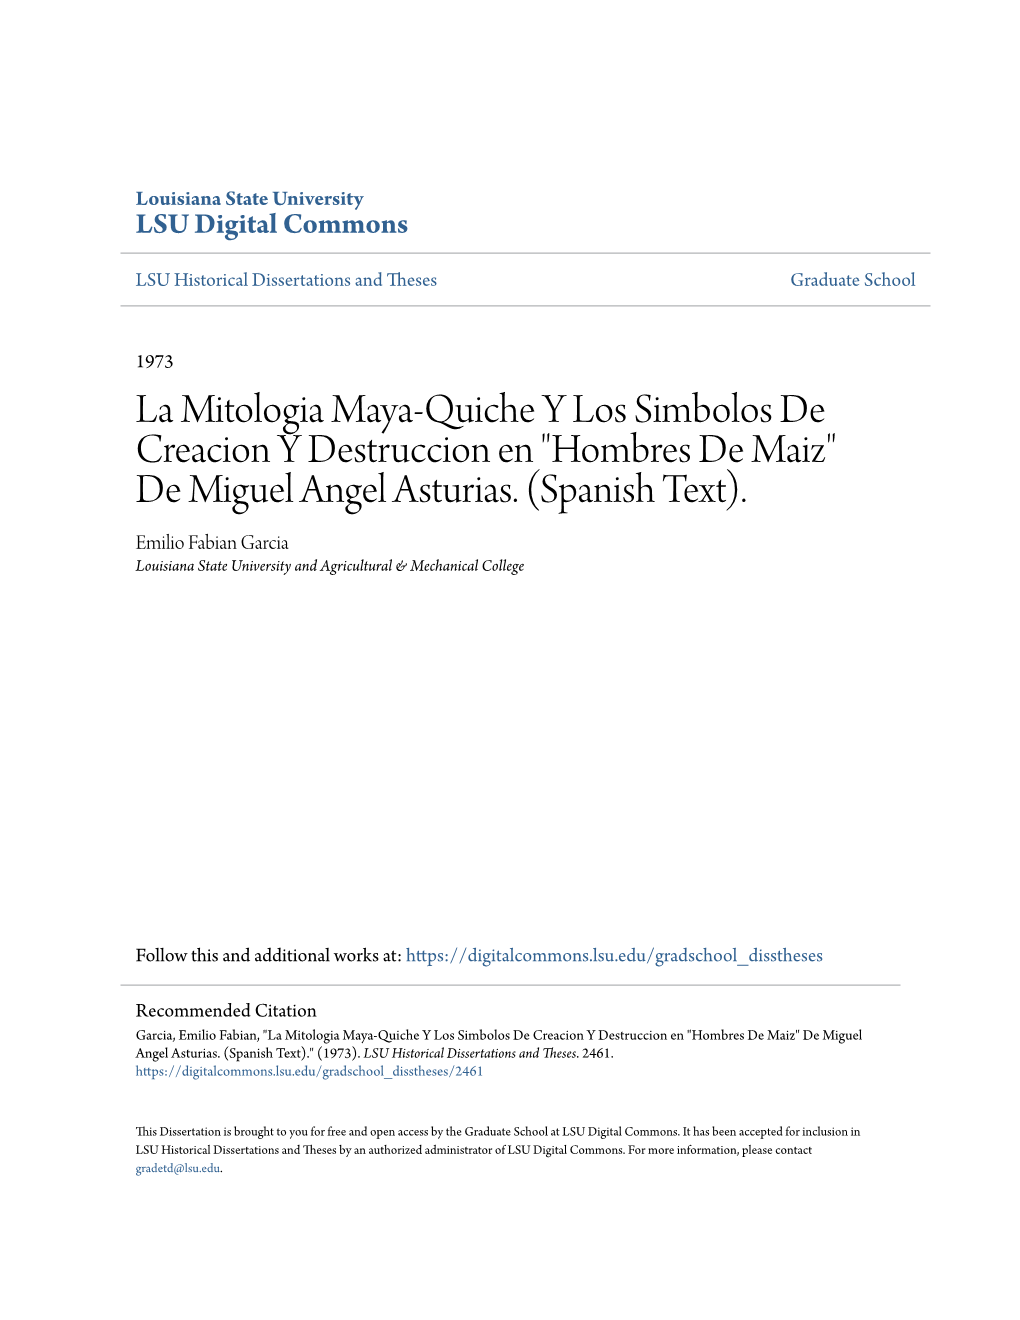 La Mitologia Maya-Quiche Y Los Simbolos De Creacion Y Destruccion En "Hombres De Maiz" De Miguel Angel Asturias